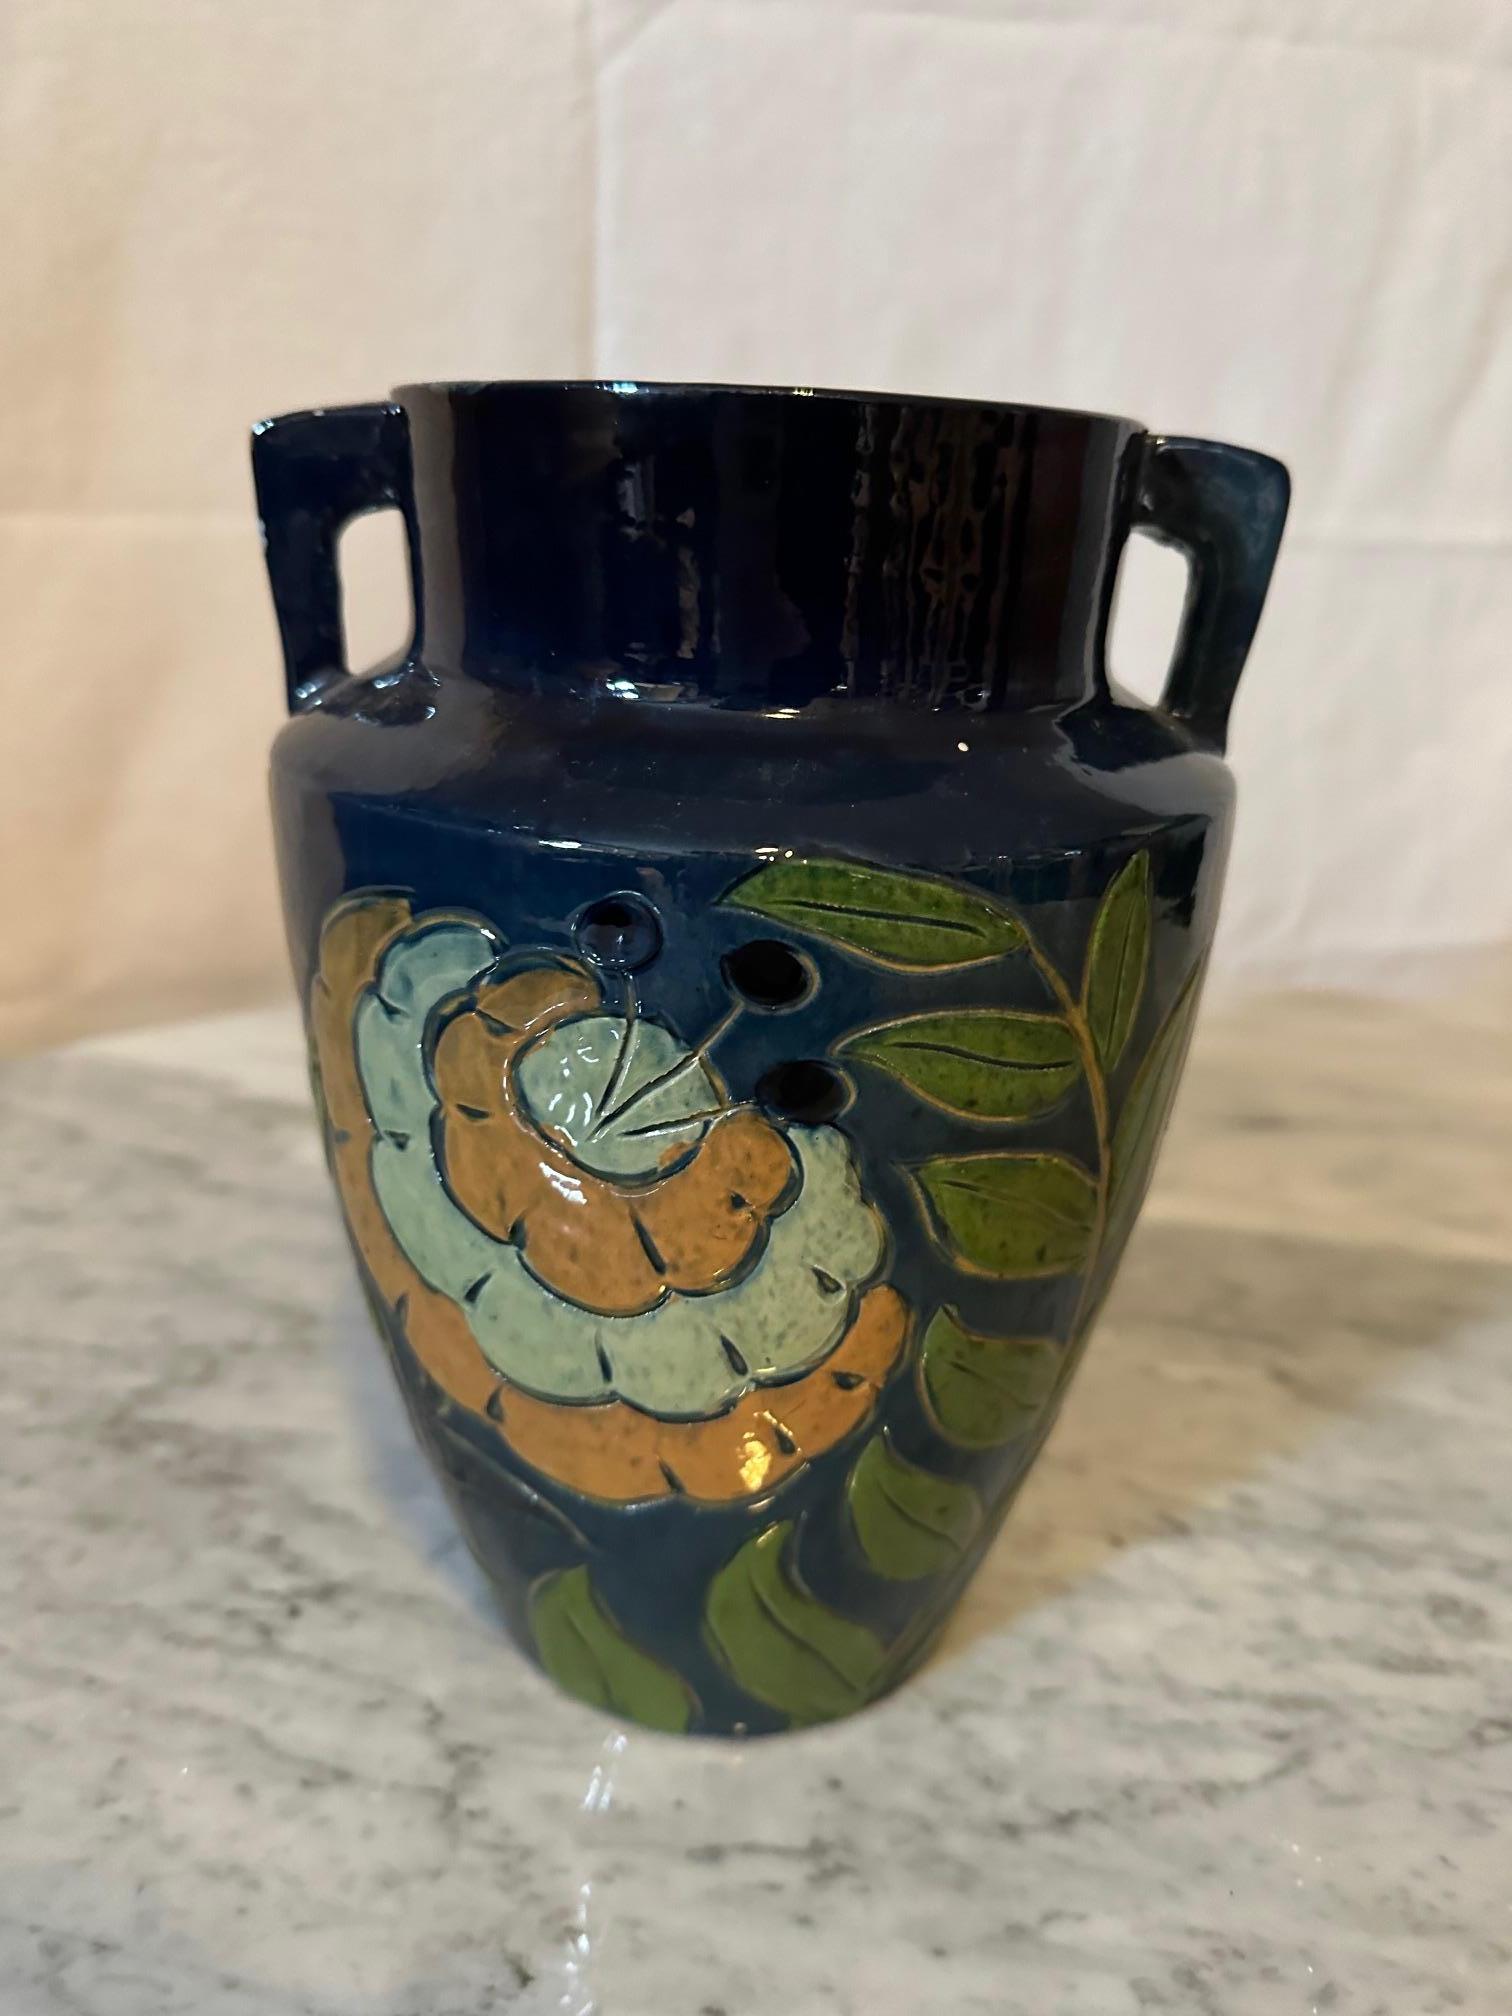 Magnifique vase en terre cuite émaillée datant des années 1940 en bon état avec double poignée. Originaire de Savoie, Fauquet à Bonneville France.  Décoré de fleurs jaunes et de feuillage vert. 
Signé 